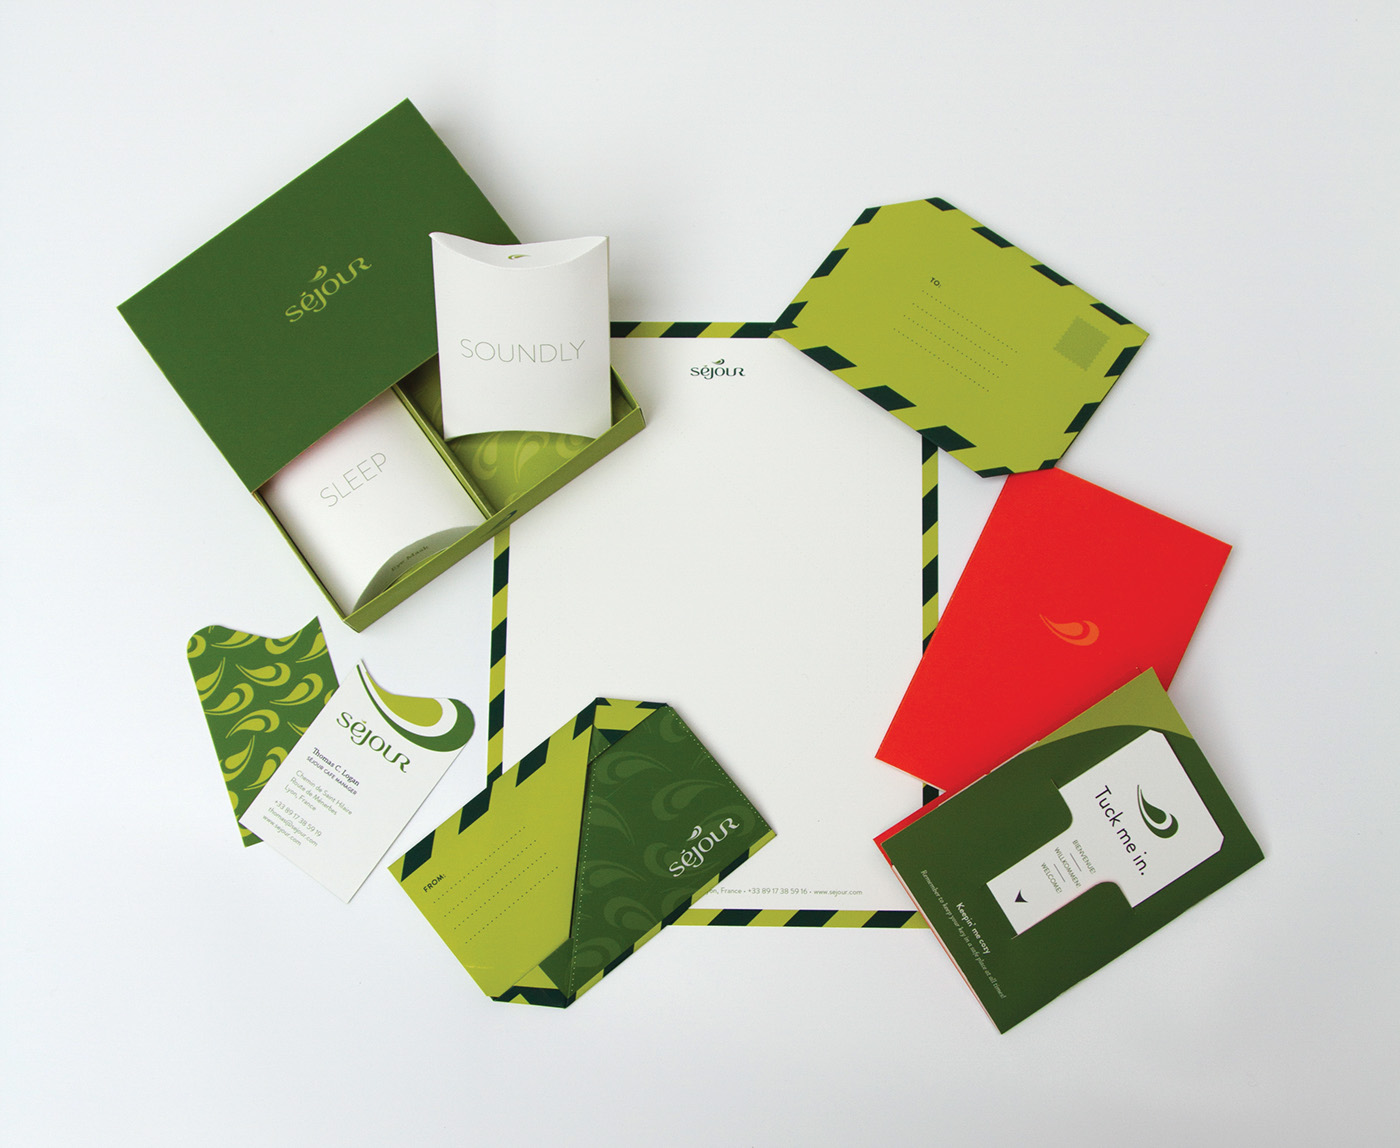 design package design  hotel hostel france Sojourn séjour green orange Booklet kit bathroom soap B&B lacoste